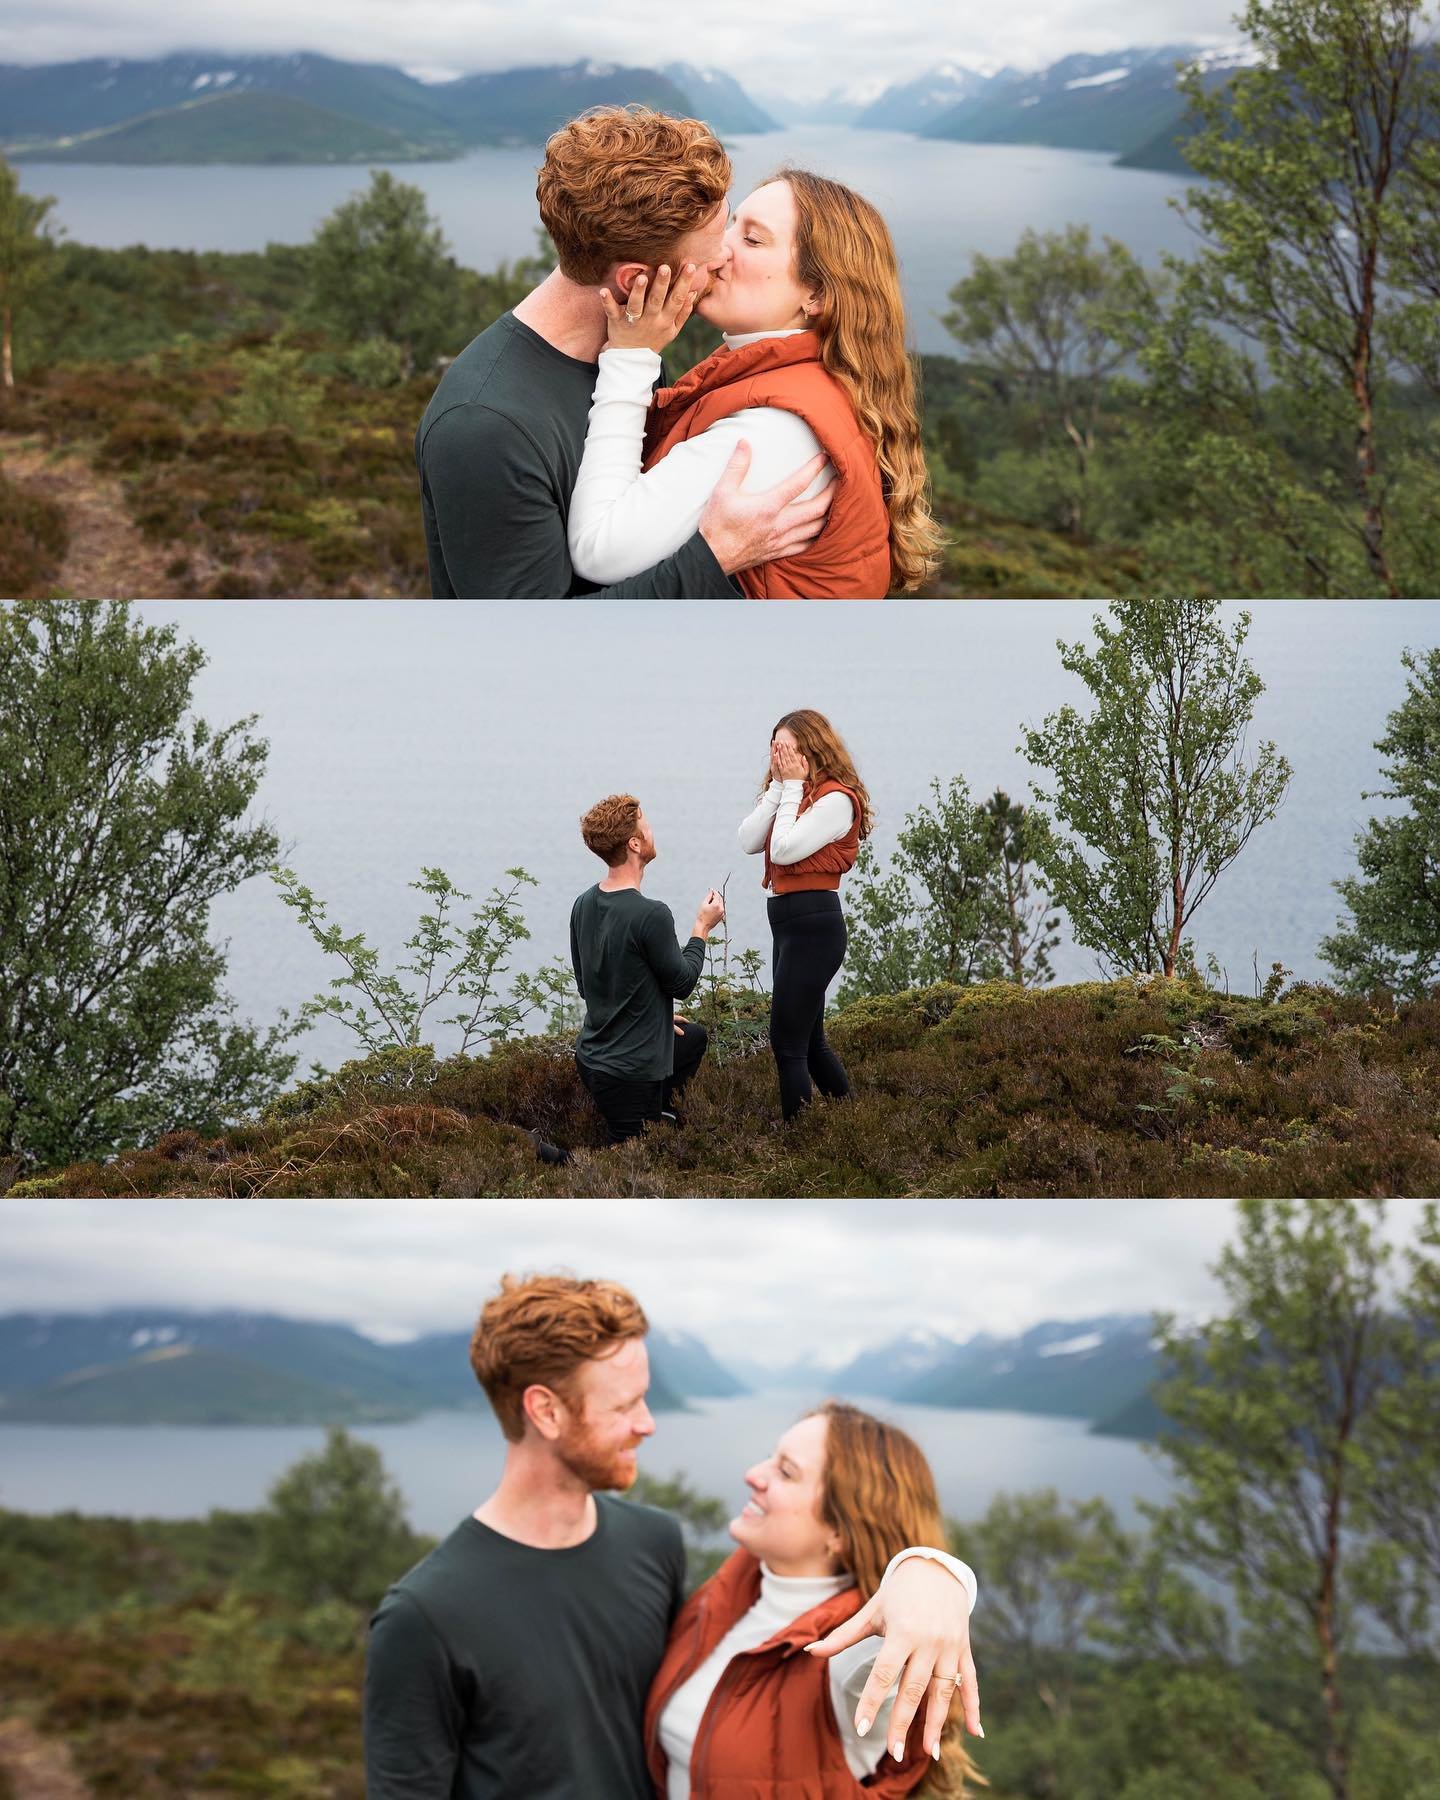 Corey og Kyra 💍
Bilder fra et hemmelig oppdrag for litt siden der vi ble spurt om &aring; snikfotografere en forlovelse. 
PS: hun sa ja 😍
#proposalgoals